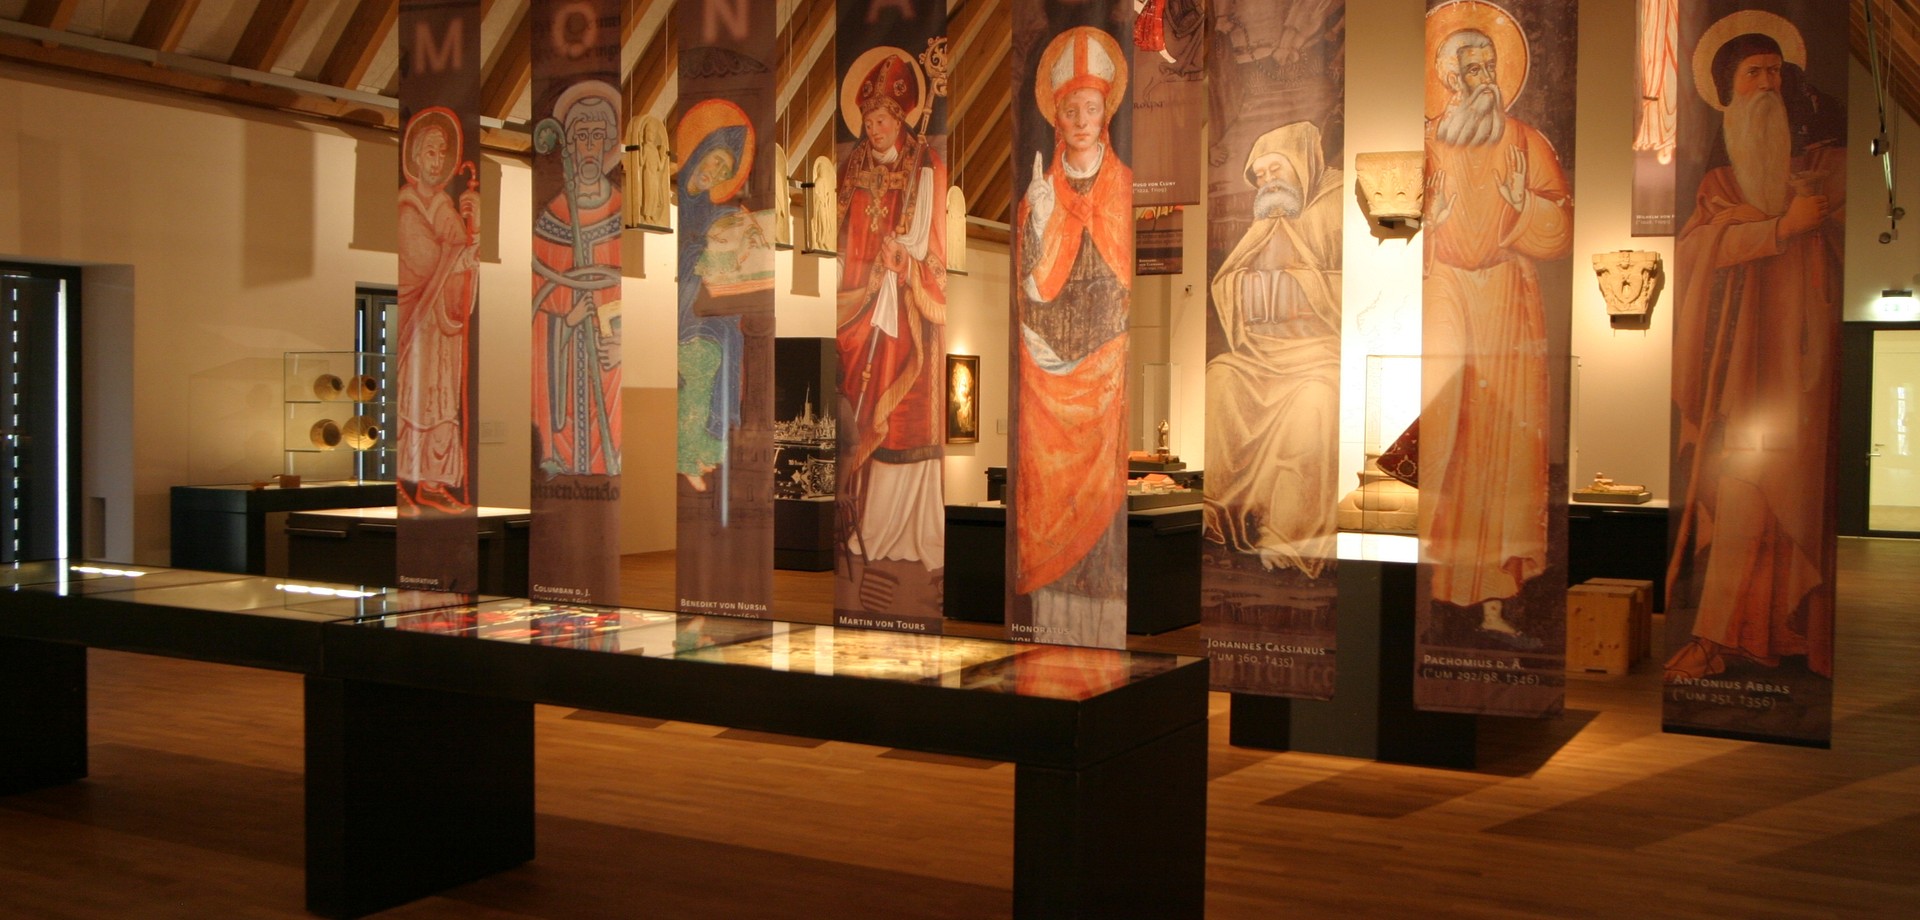 Großer Ausstellungsraum mit unterschiedlichen Exponaten zur Klostergeschichte.